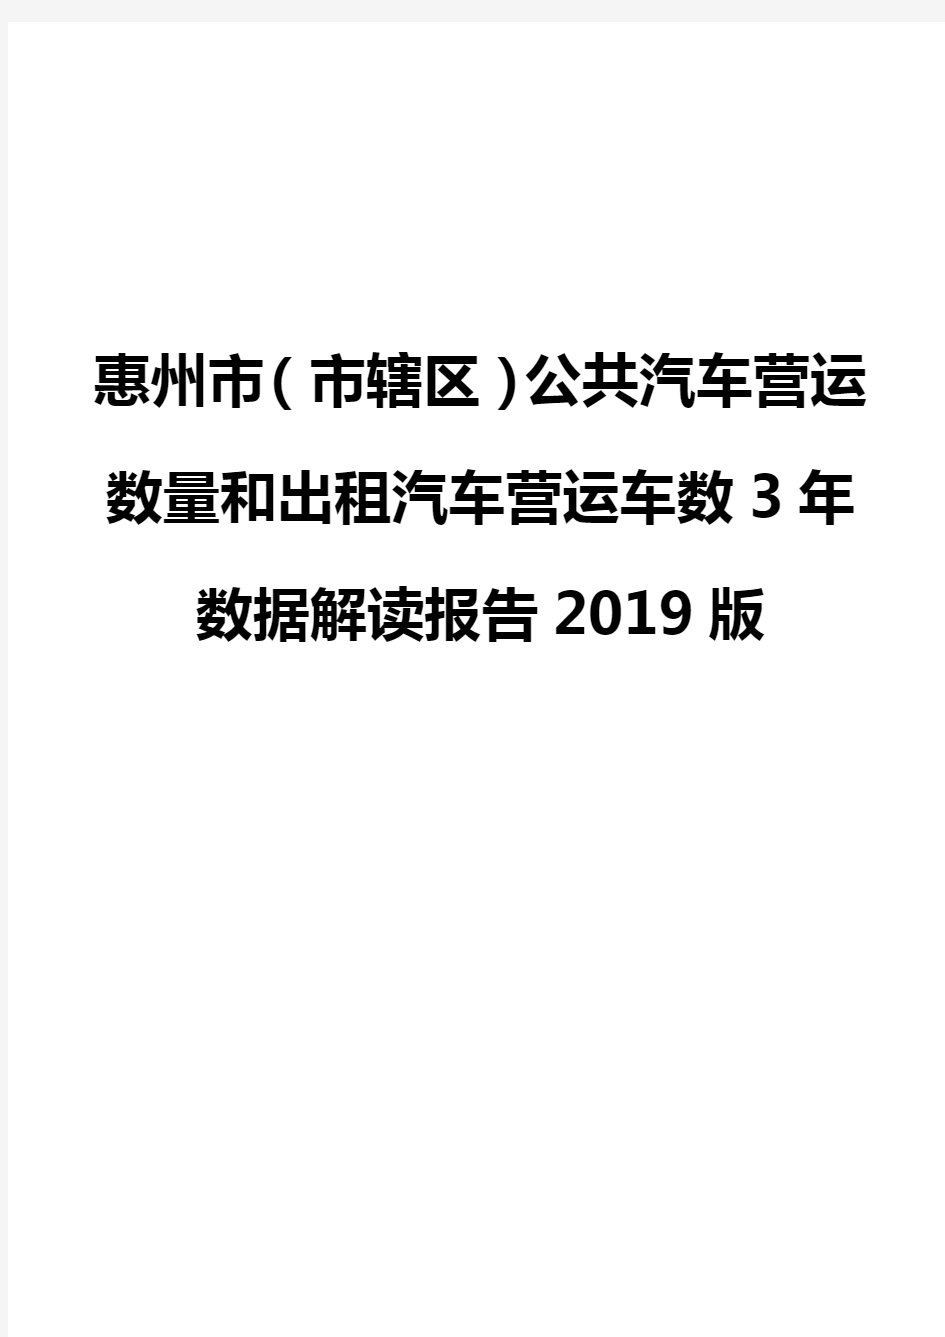 惠州市(市辖区)公共汽车营运数量和出租汽车营运车数3年数据解读报告2019版